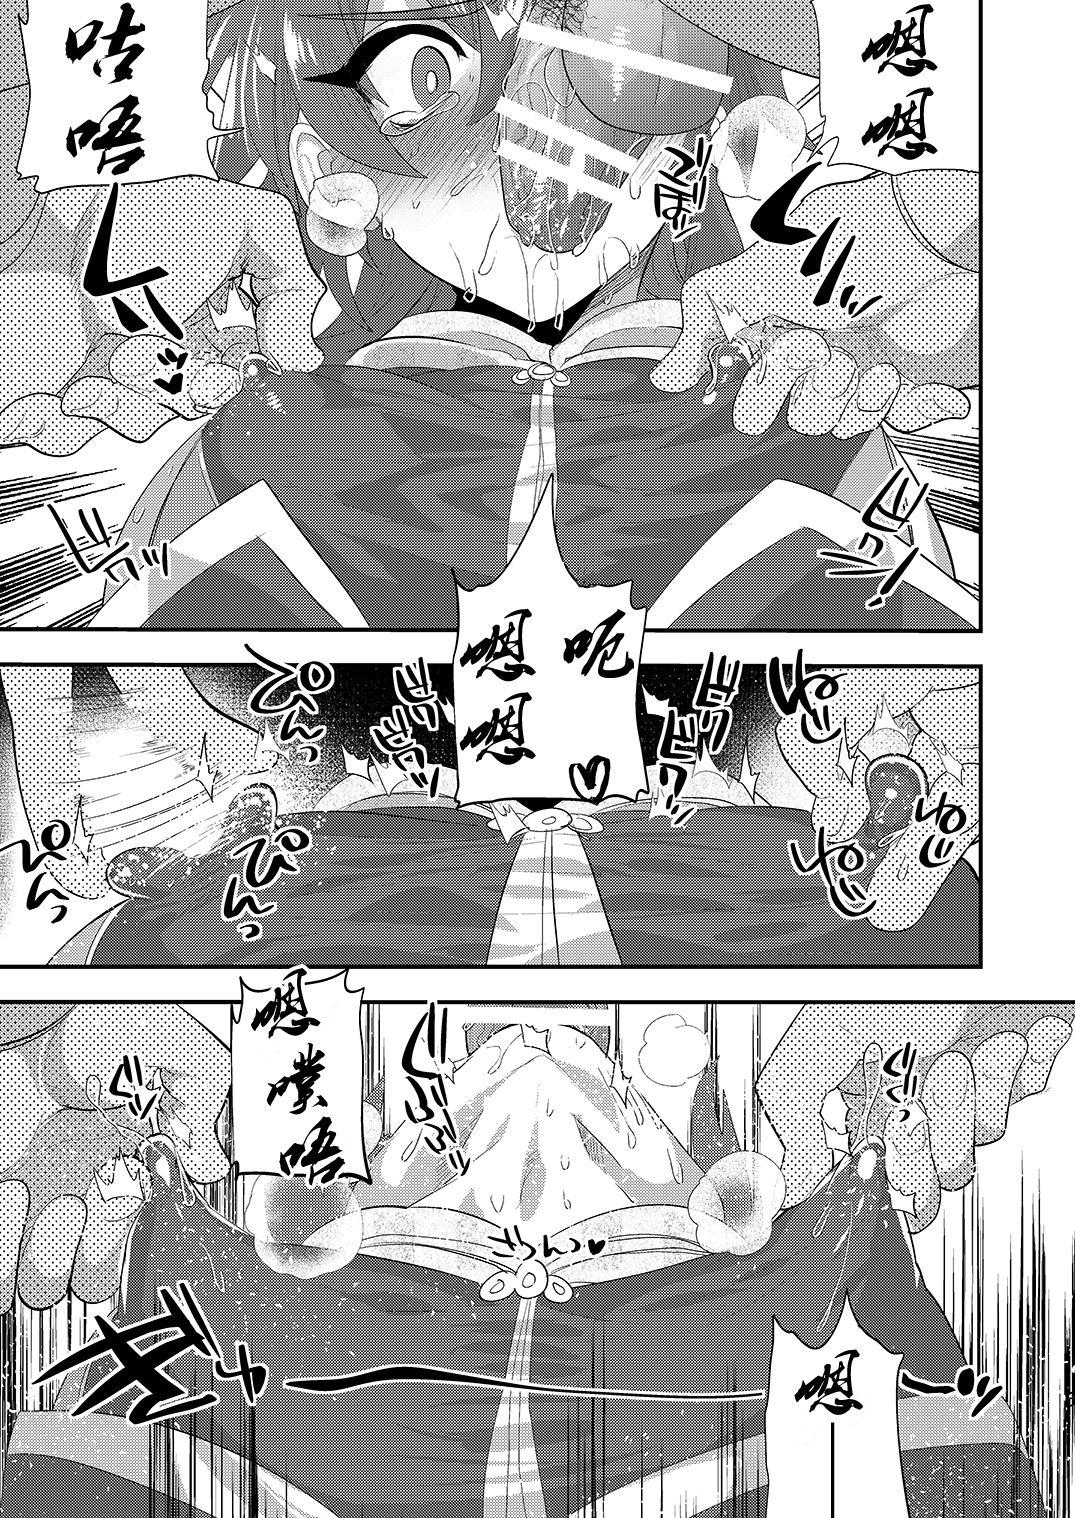 Ladyboy Kizuna LV0 no raama ou to himitsuno omajinai - Fate grand order Casero - Page 6